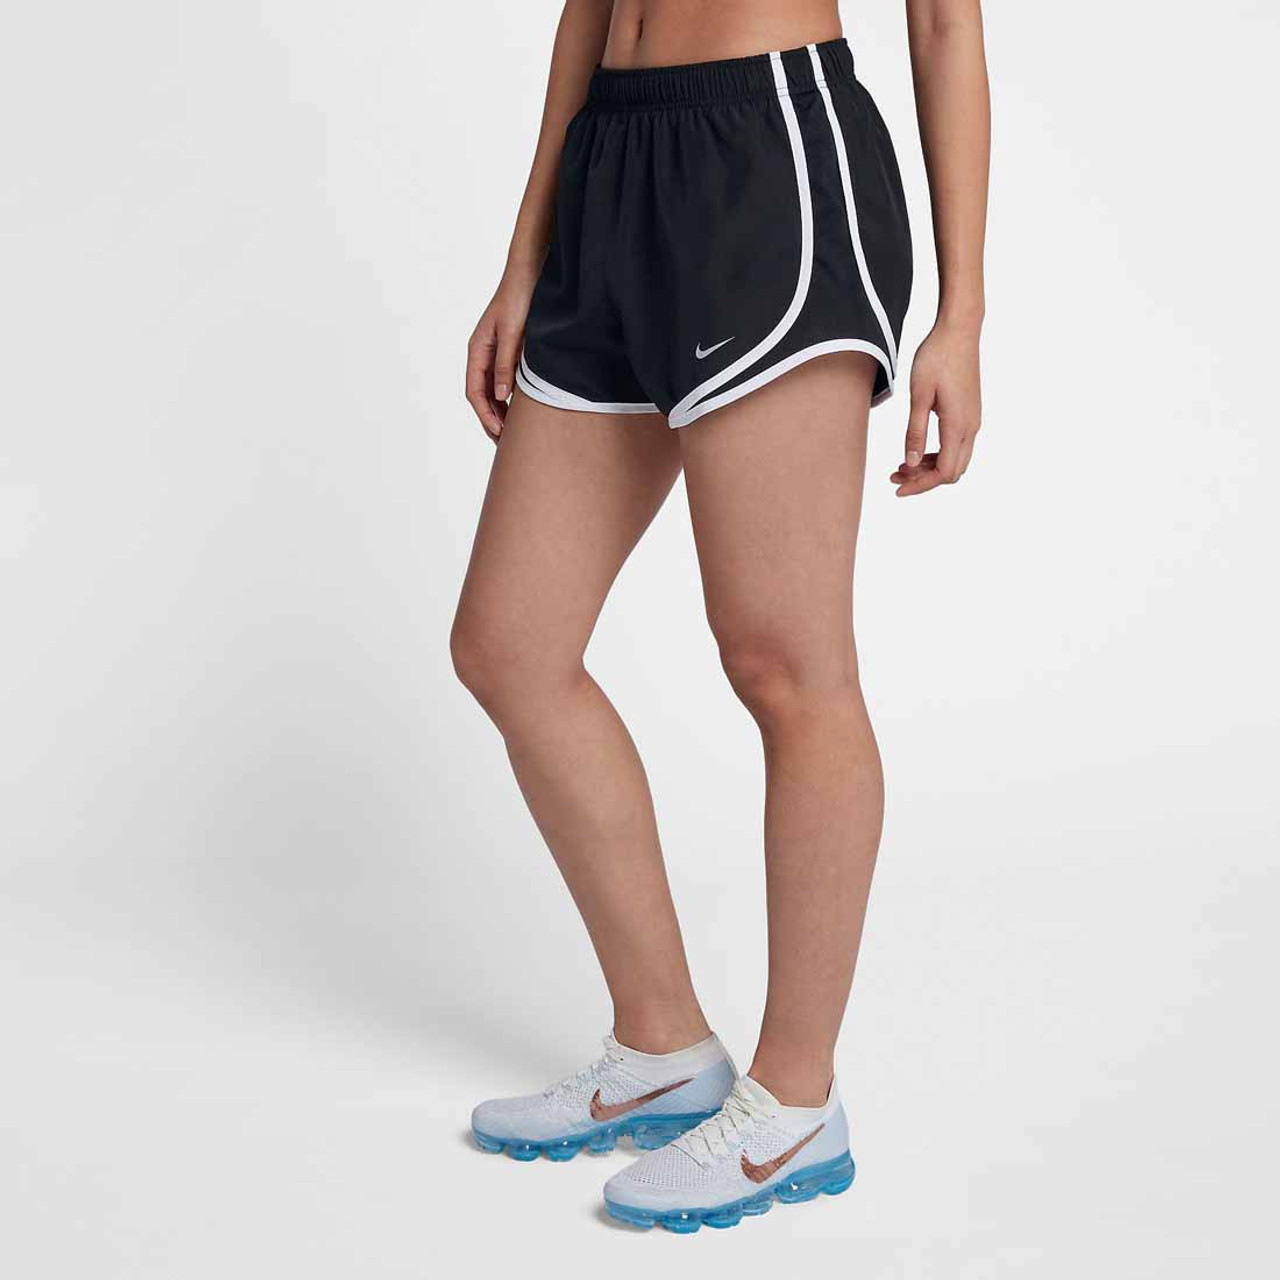 Women's Black/White Nike Tempo Running Shorts $ 30 TYLER'S